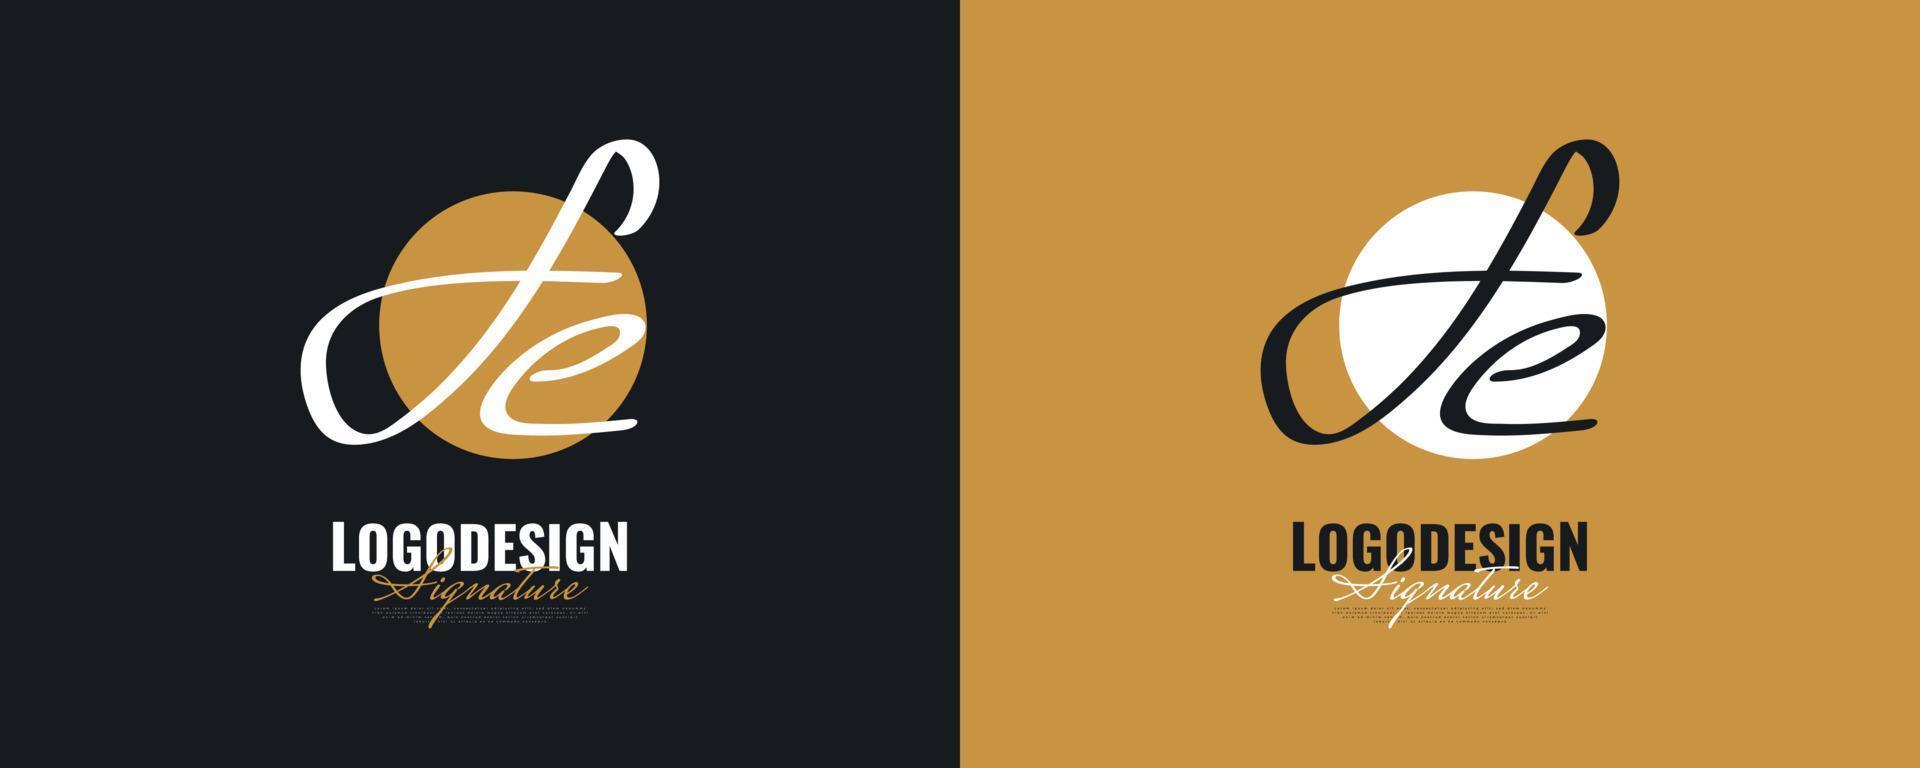 initial f och e logotypdesign med elegant och minimalistisk handstil. fe signaturlogotyp eller symbol för bröllop, mode, smycken, boutique och affärsidentitet vektor